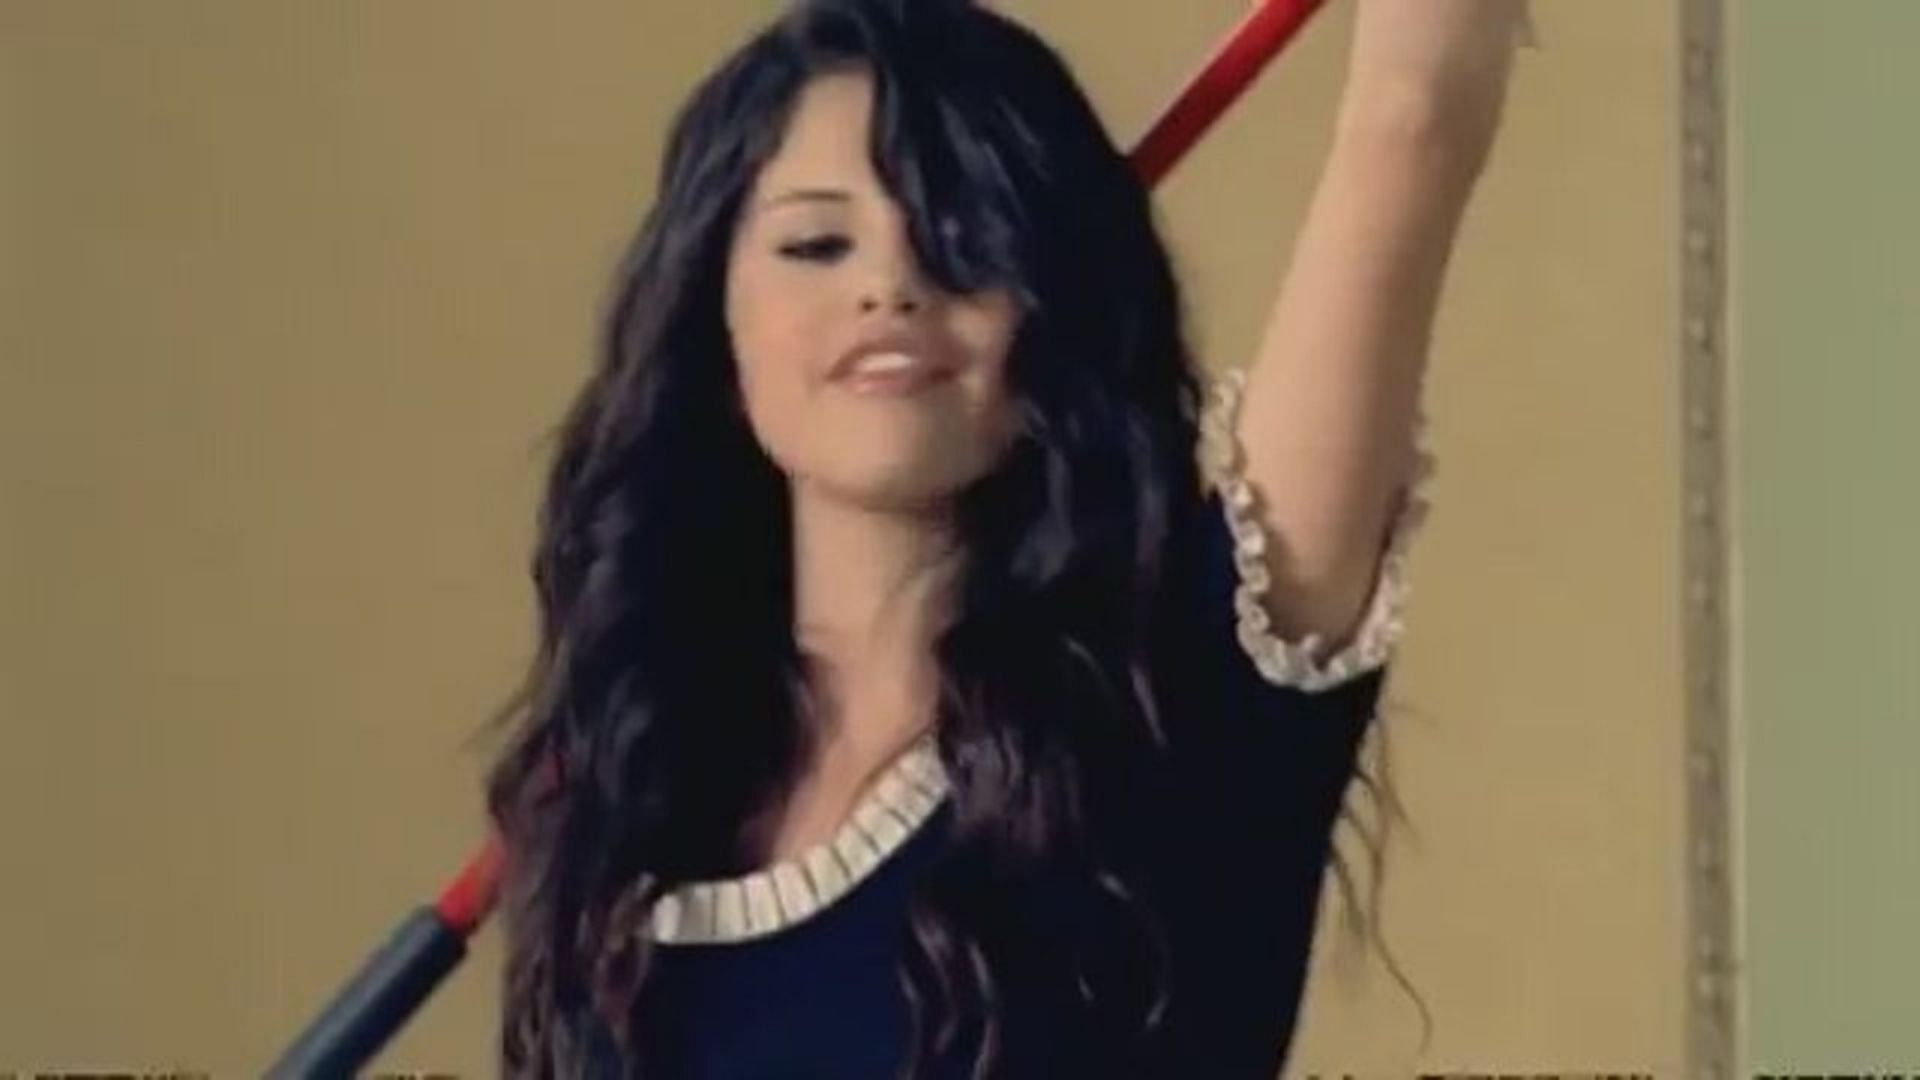 Selena Gomez in a music video (Image via IMDB)